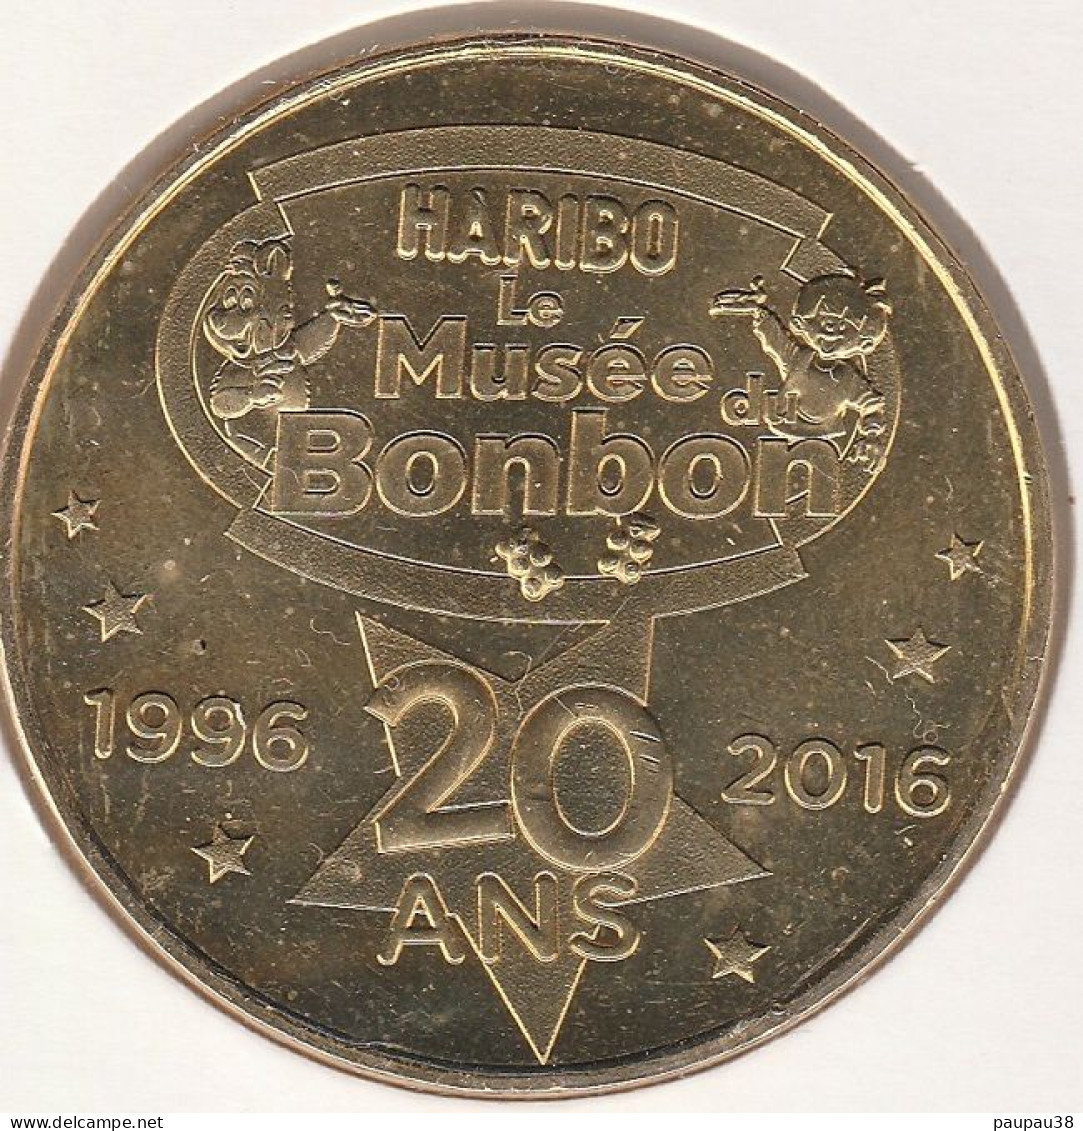 MONNAIE DE PARIS 2016 - 30 UZÈS Musée Du Bonbon Haribo - Musée Du Bonbon HARIBO - 20 Ans 1996- 2016 - 2016